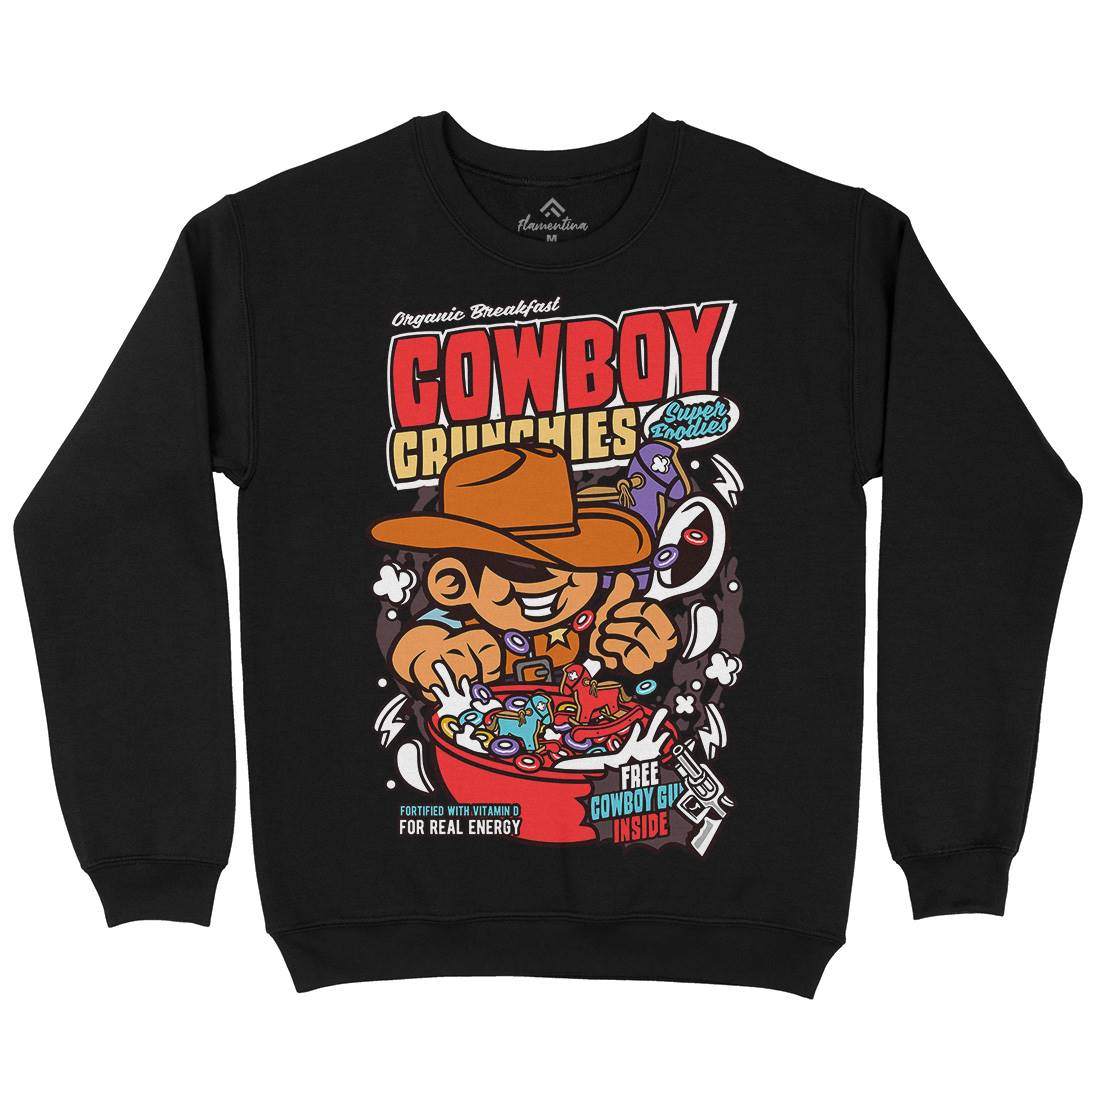 Cowboy Crunchies Kids Crew Neck Sweatshirt Food C529